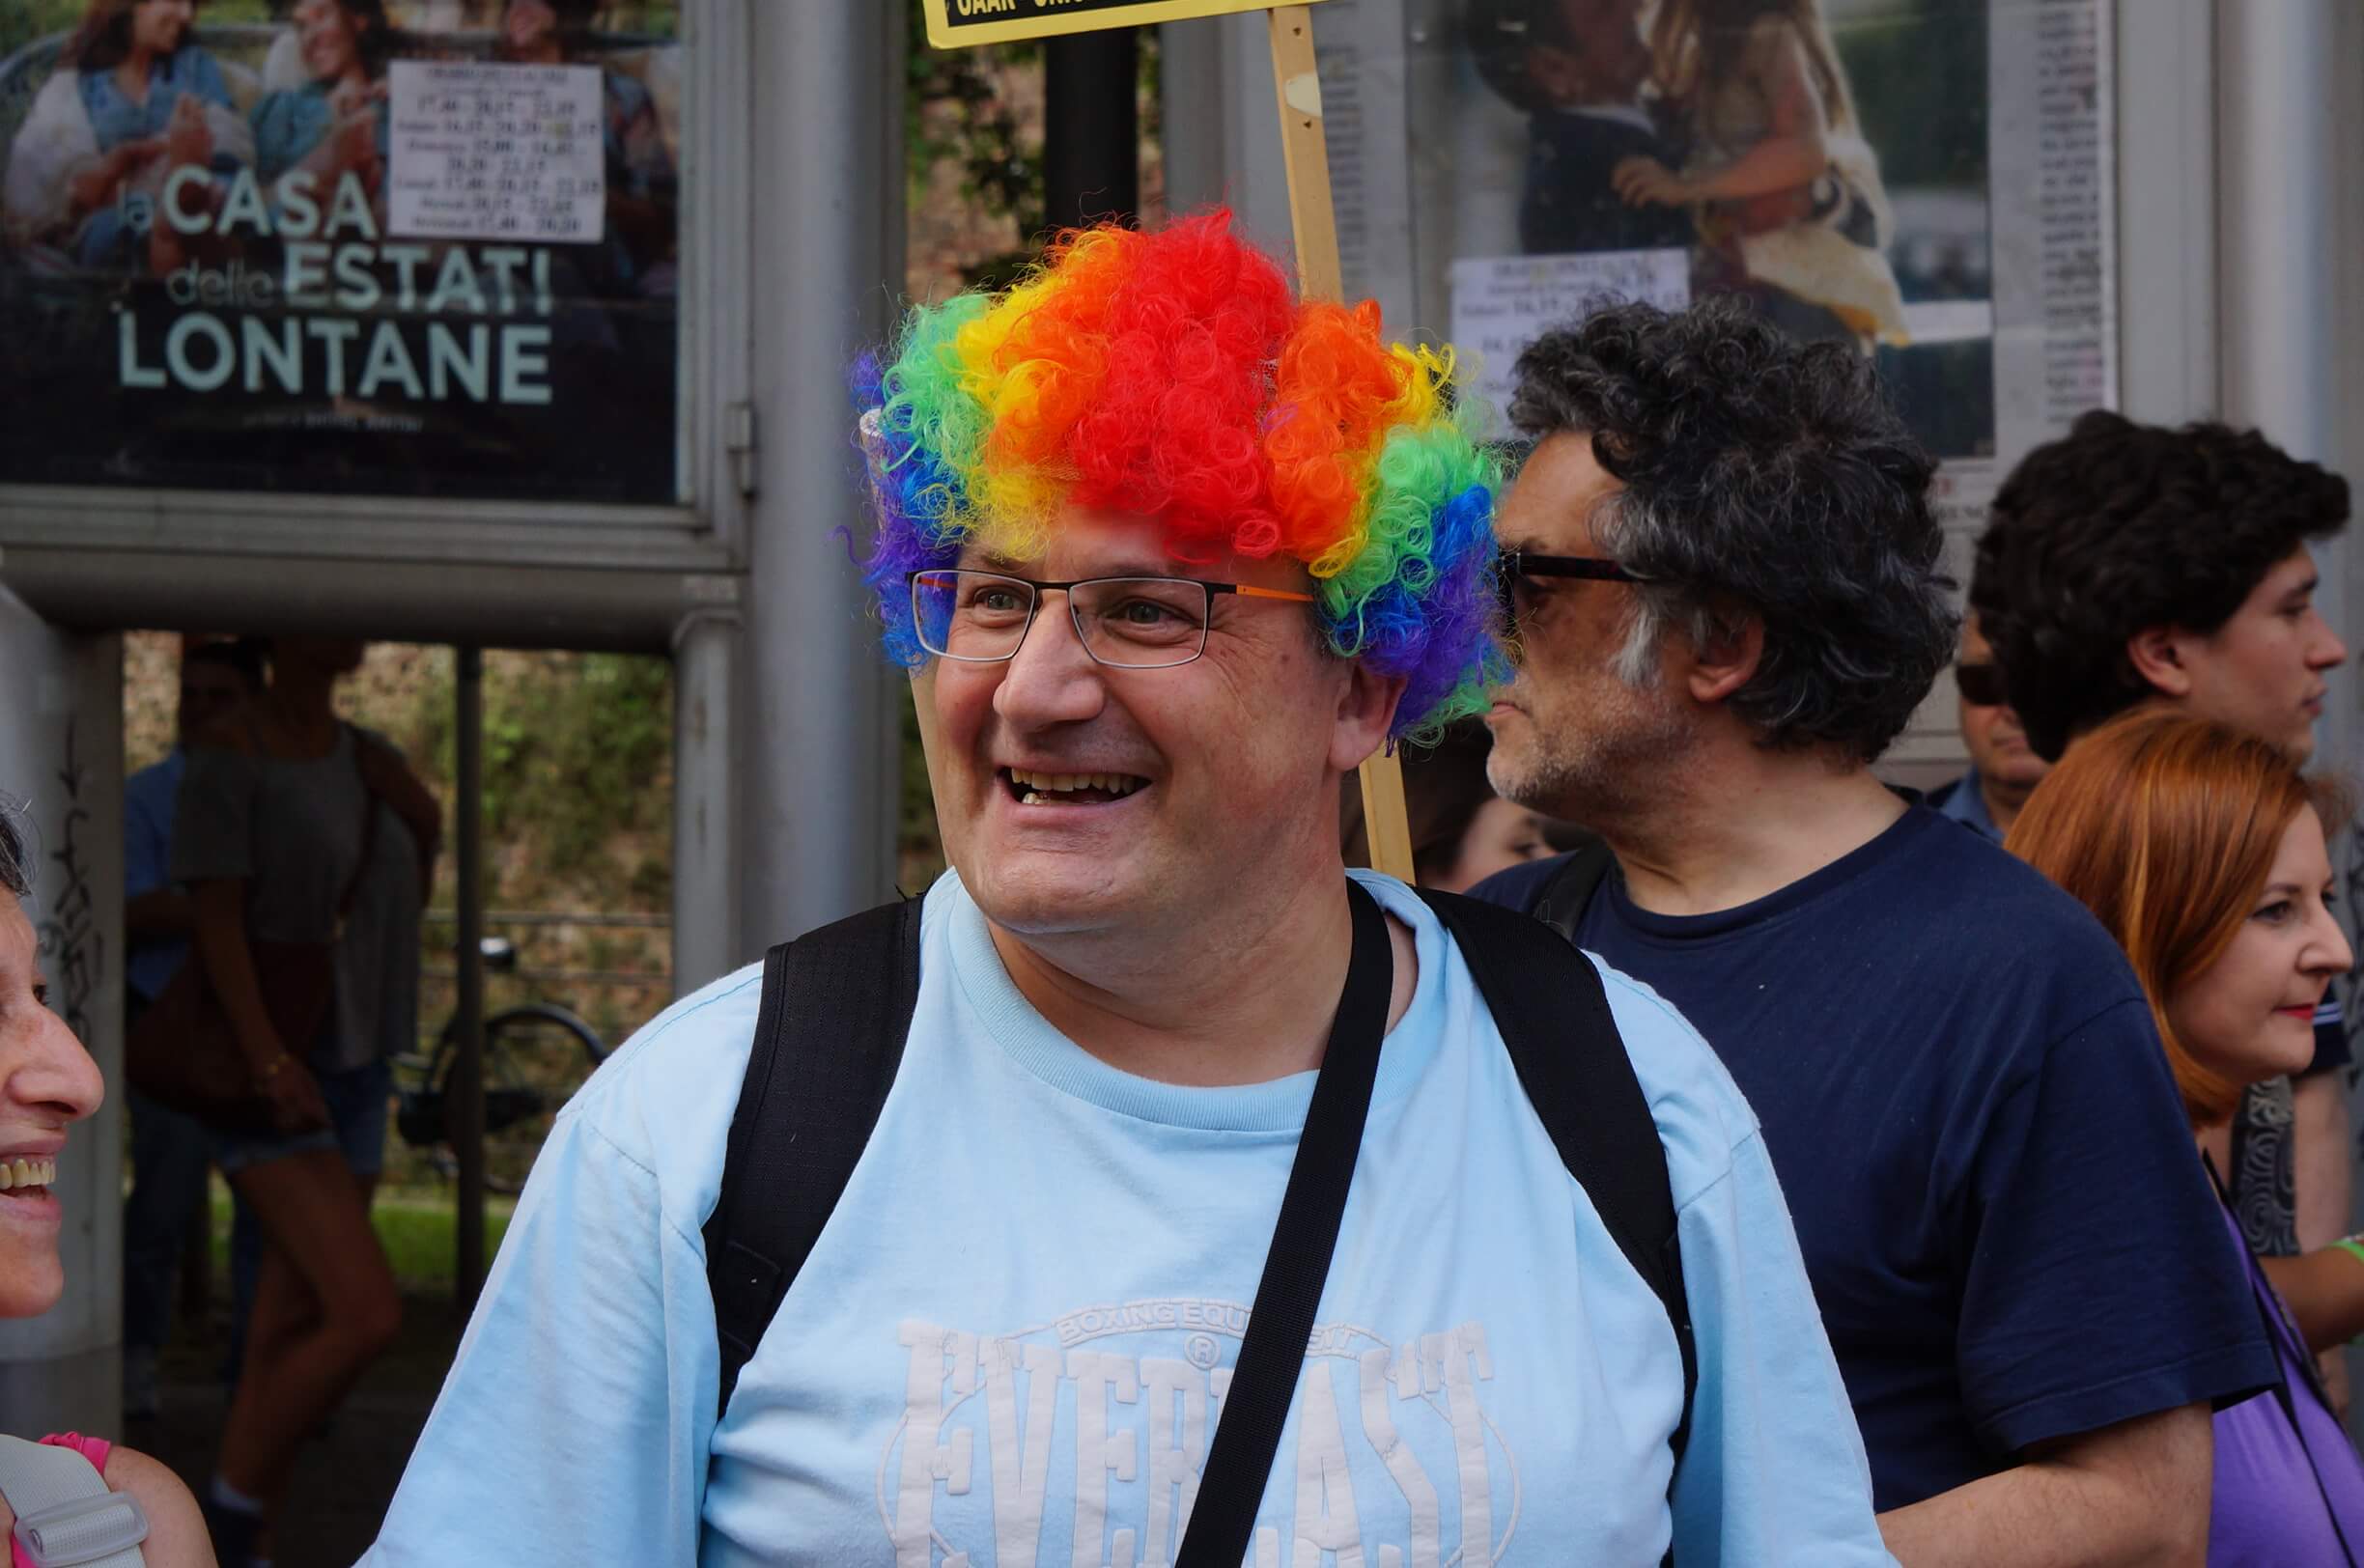 Treviso Pride: le foto di una parata storica e significativa